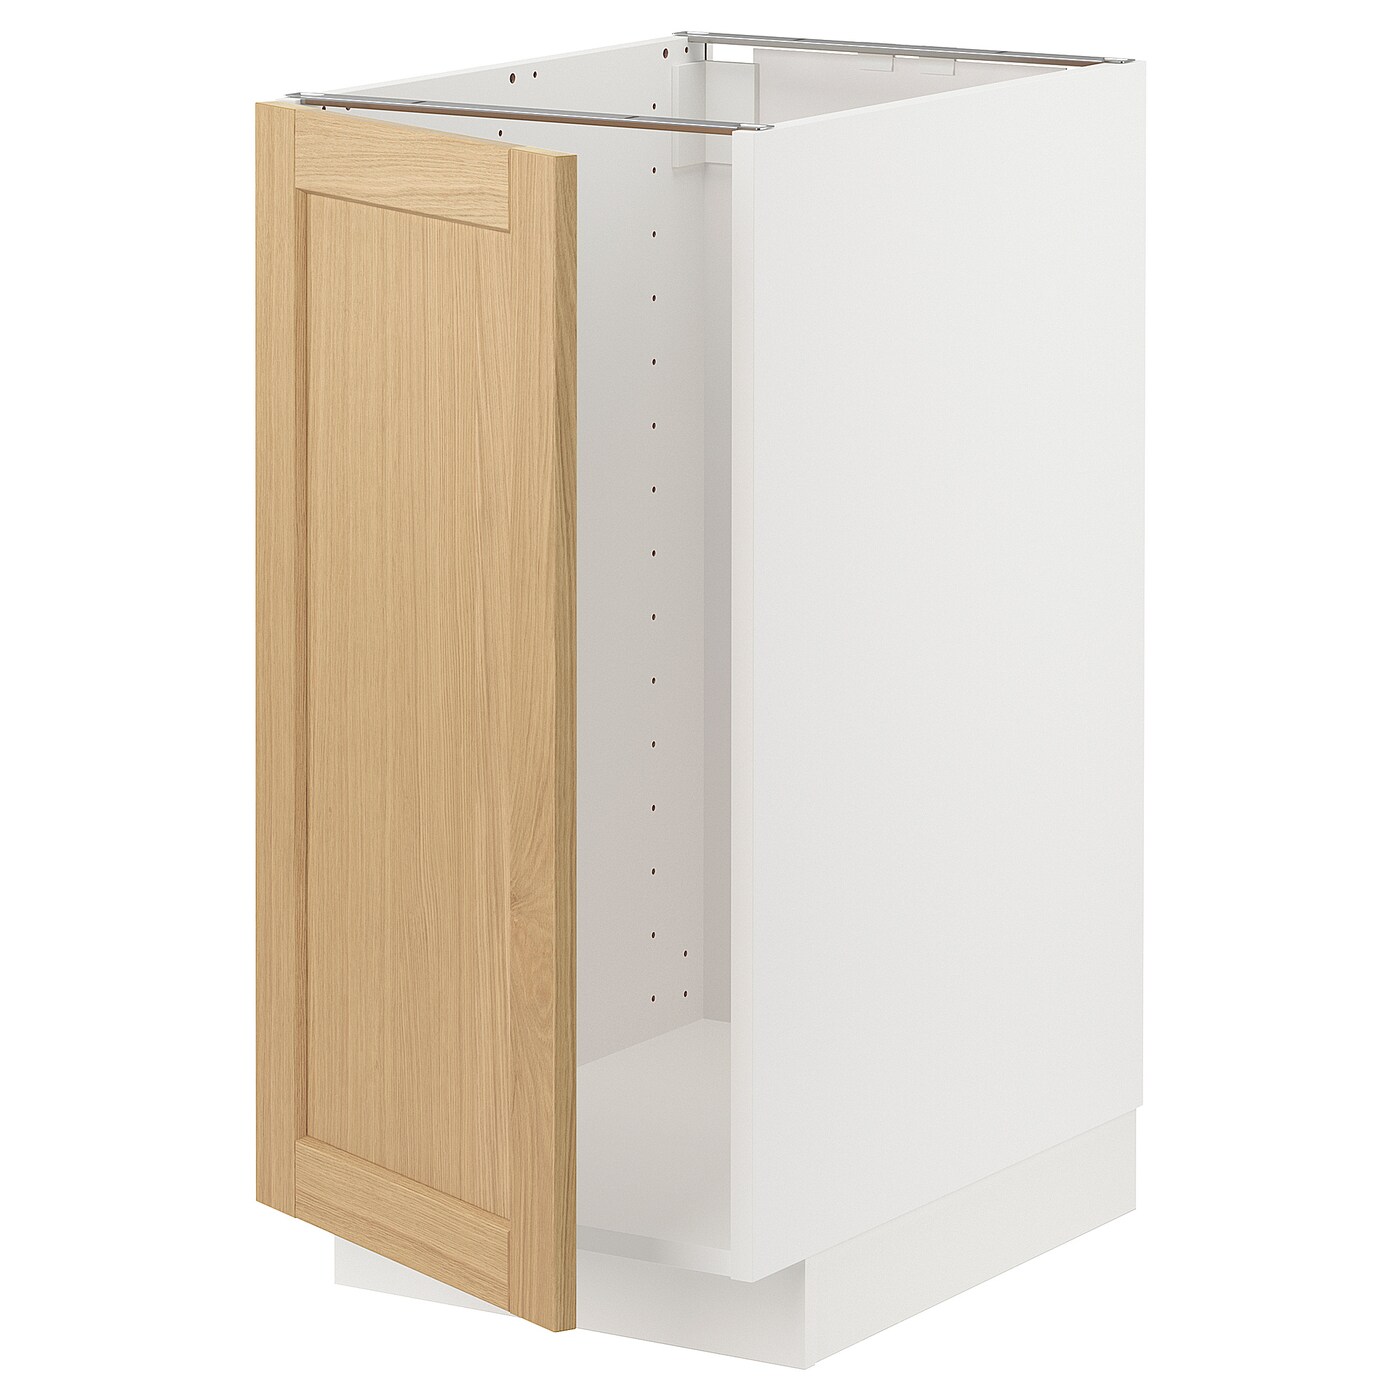 Напольный шкаф - METOD IKEA/ МЕТОД ИКЕА,  40х60 см, белый/под беленый дуб